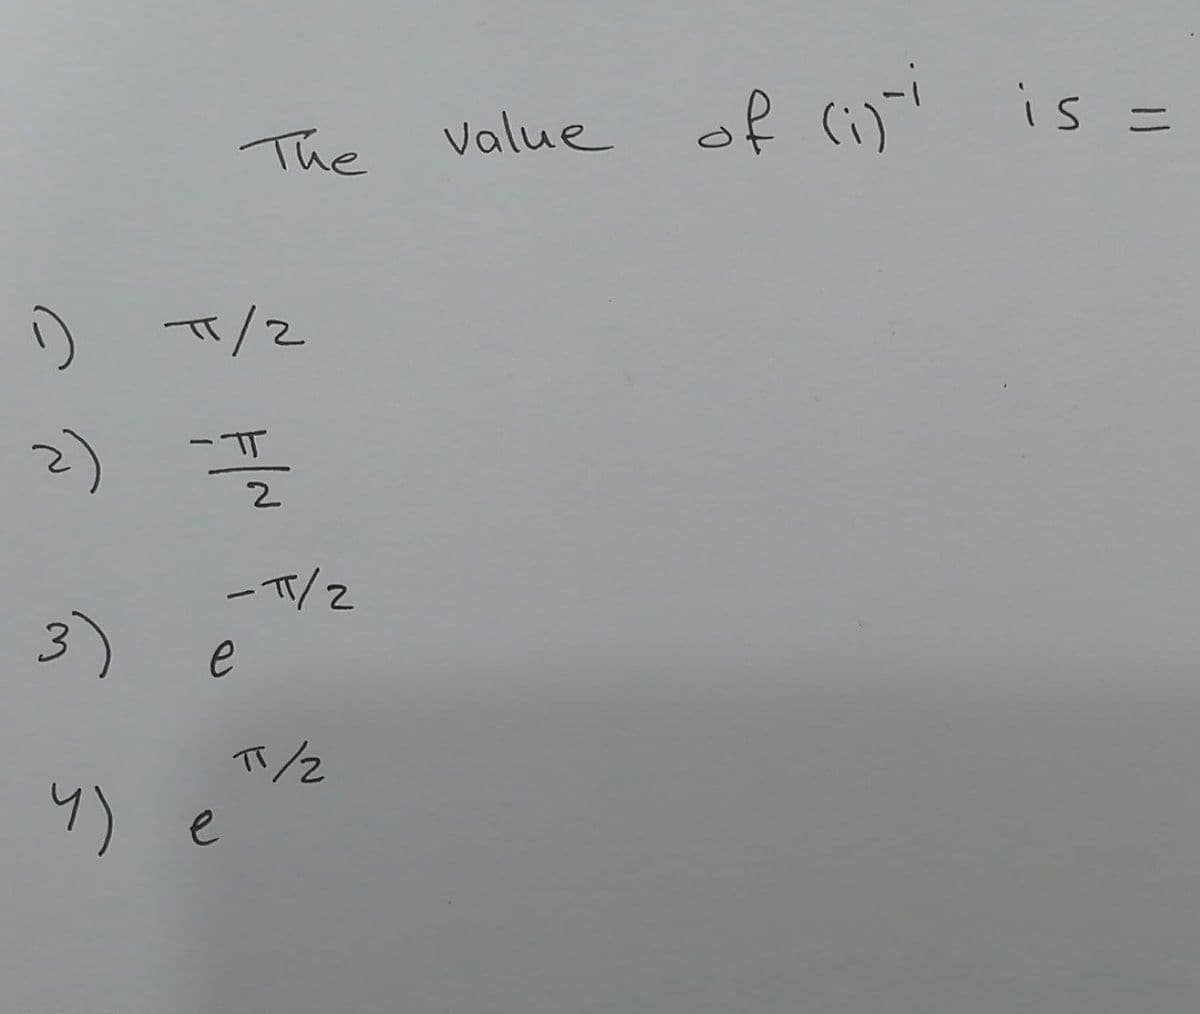 Value of
is :
ニ
The
TT/2
2)
2.
一T/2
3)
e
4) e
